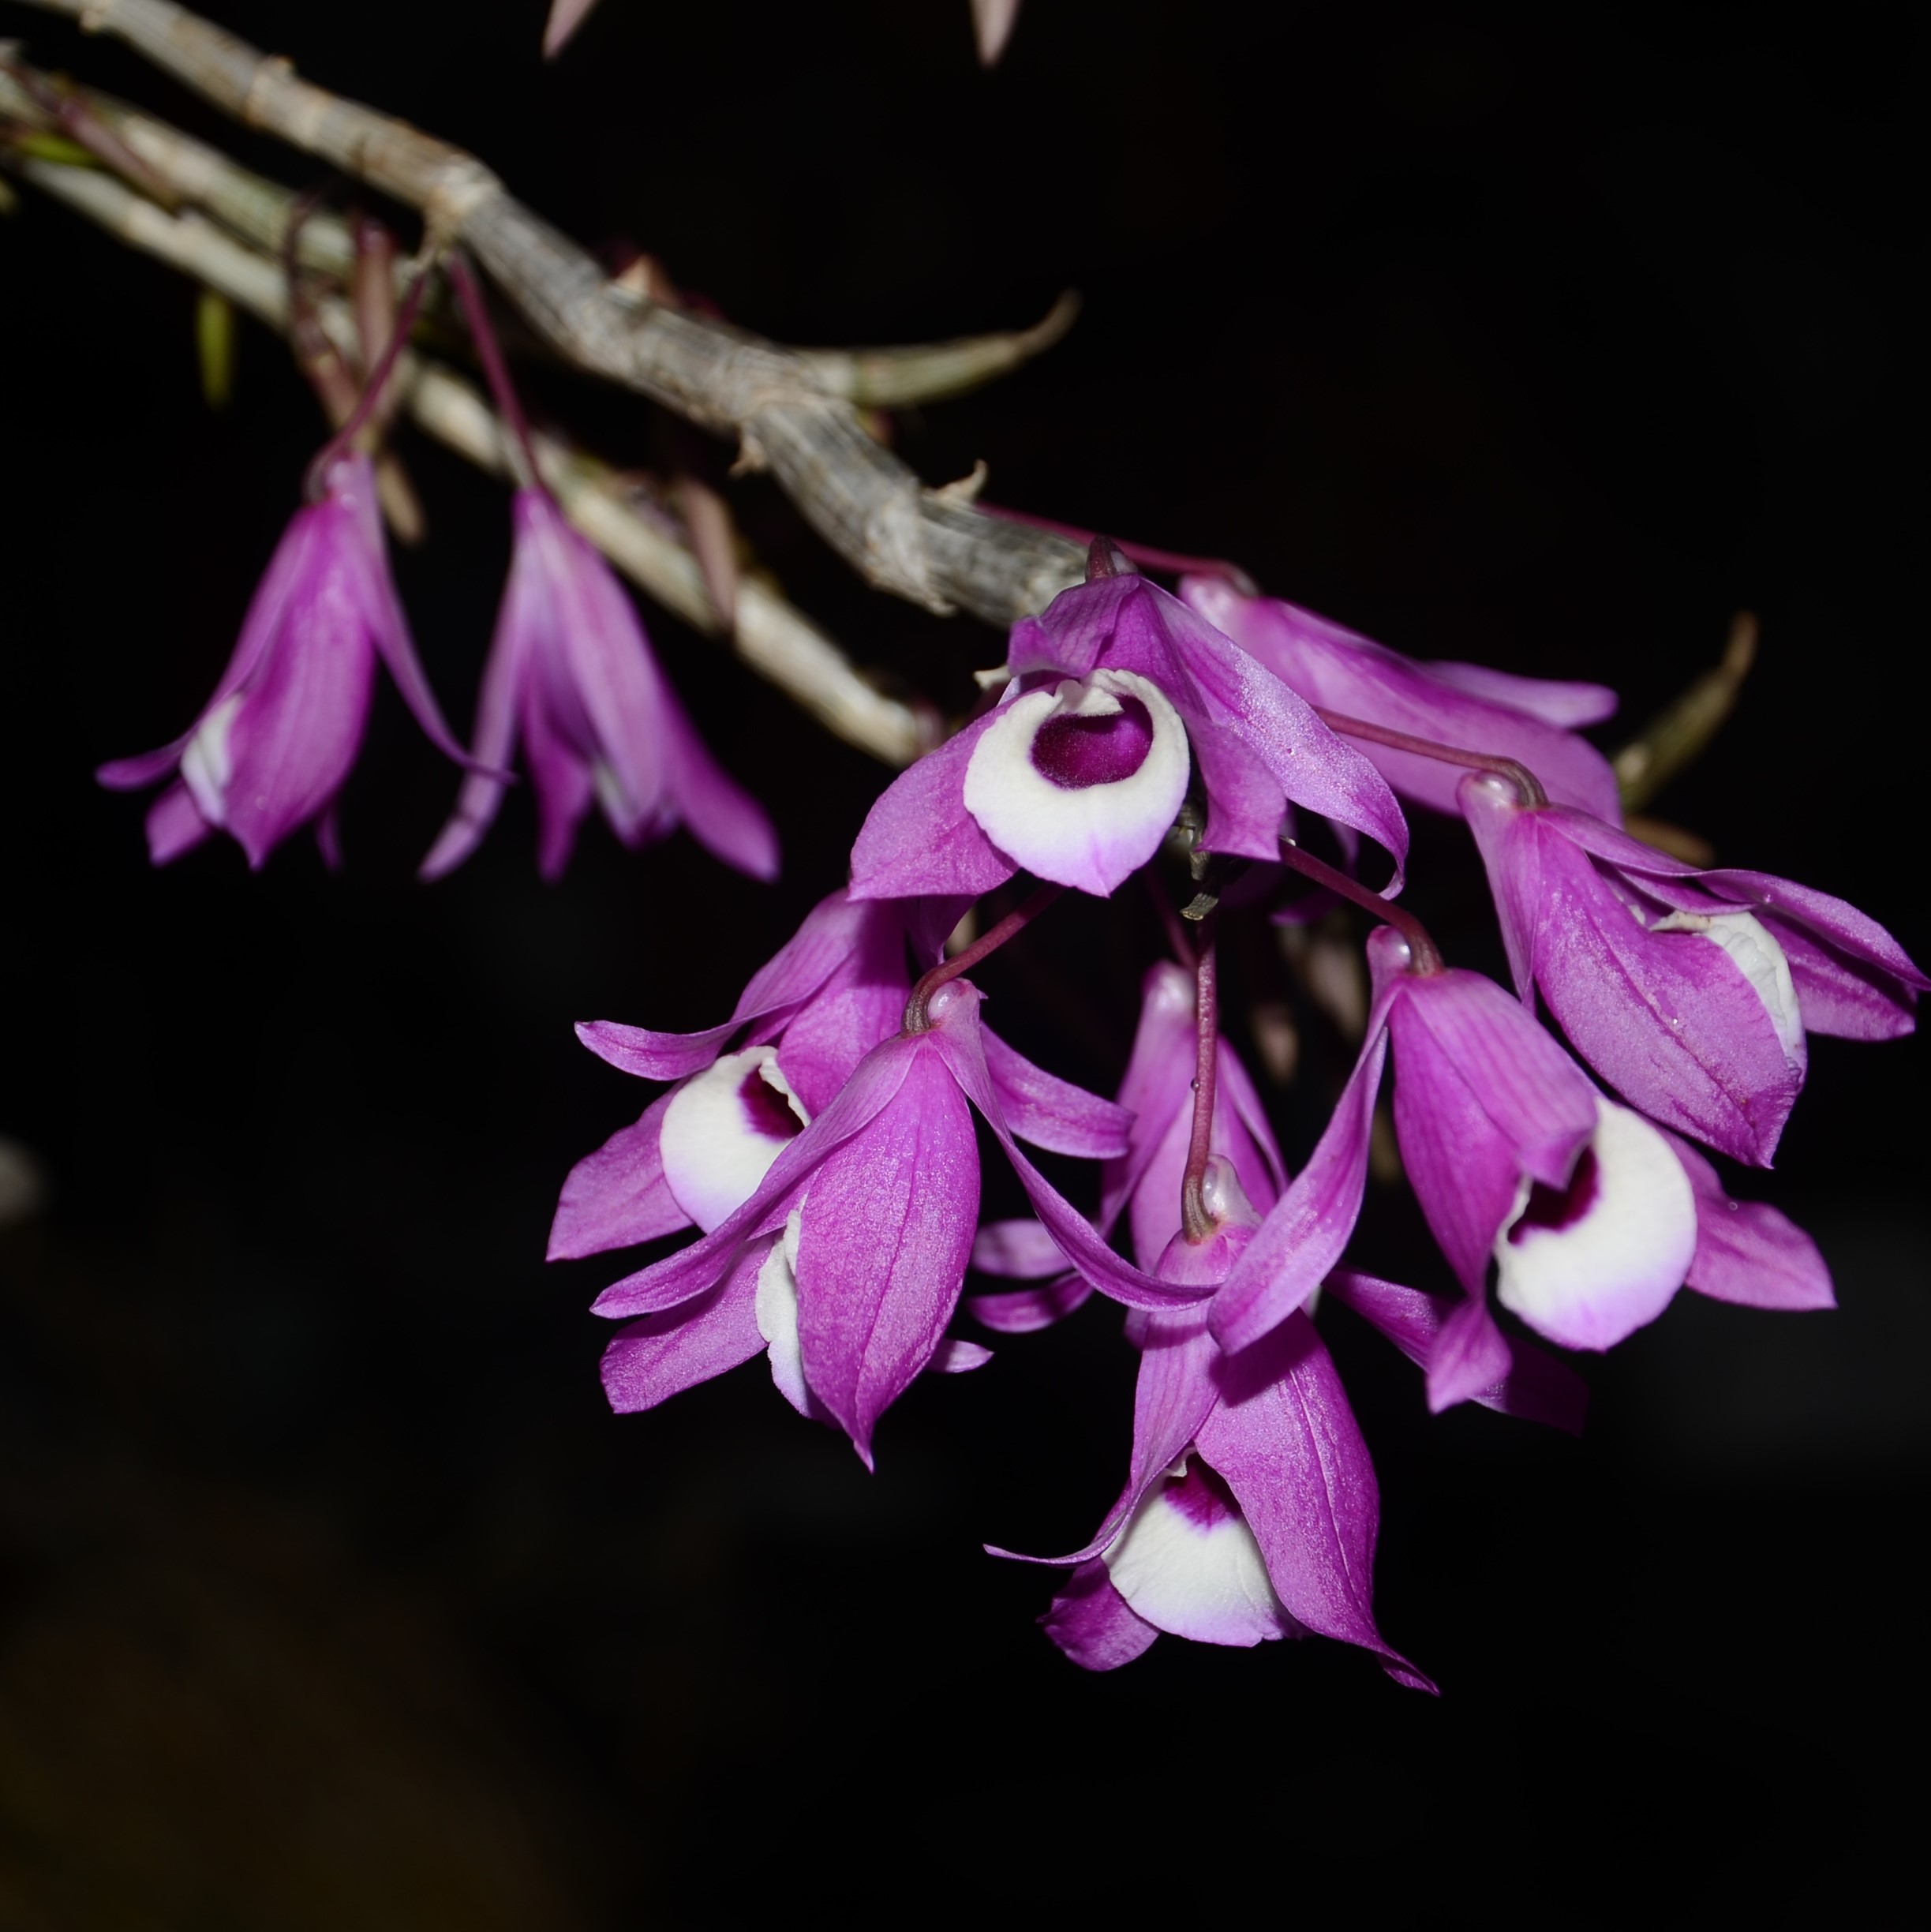 兰花-洋兰-石斛兰-喇叭唇石斛Dendrobium lituiflorum Lindl.